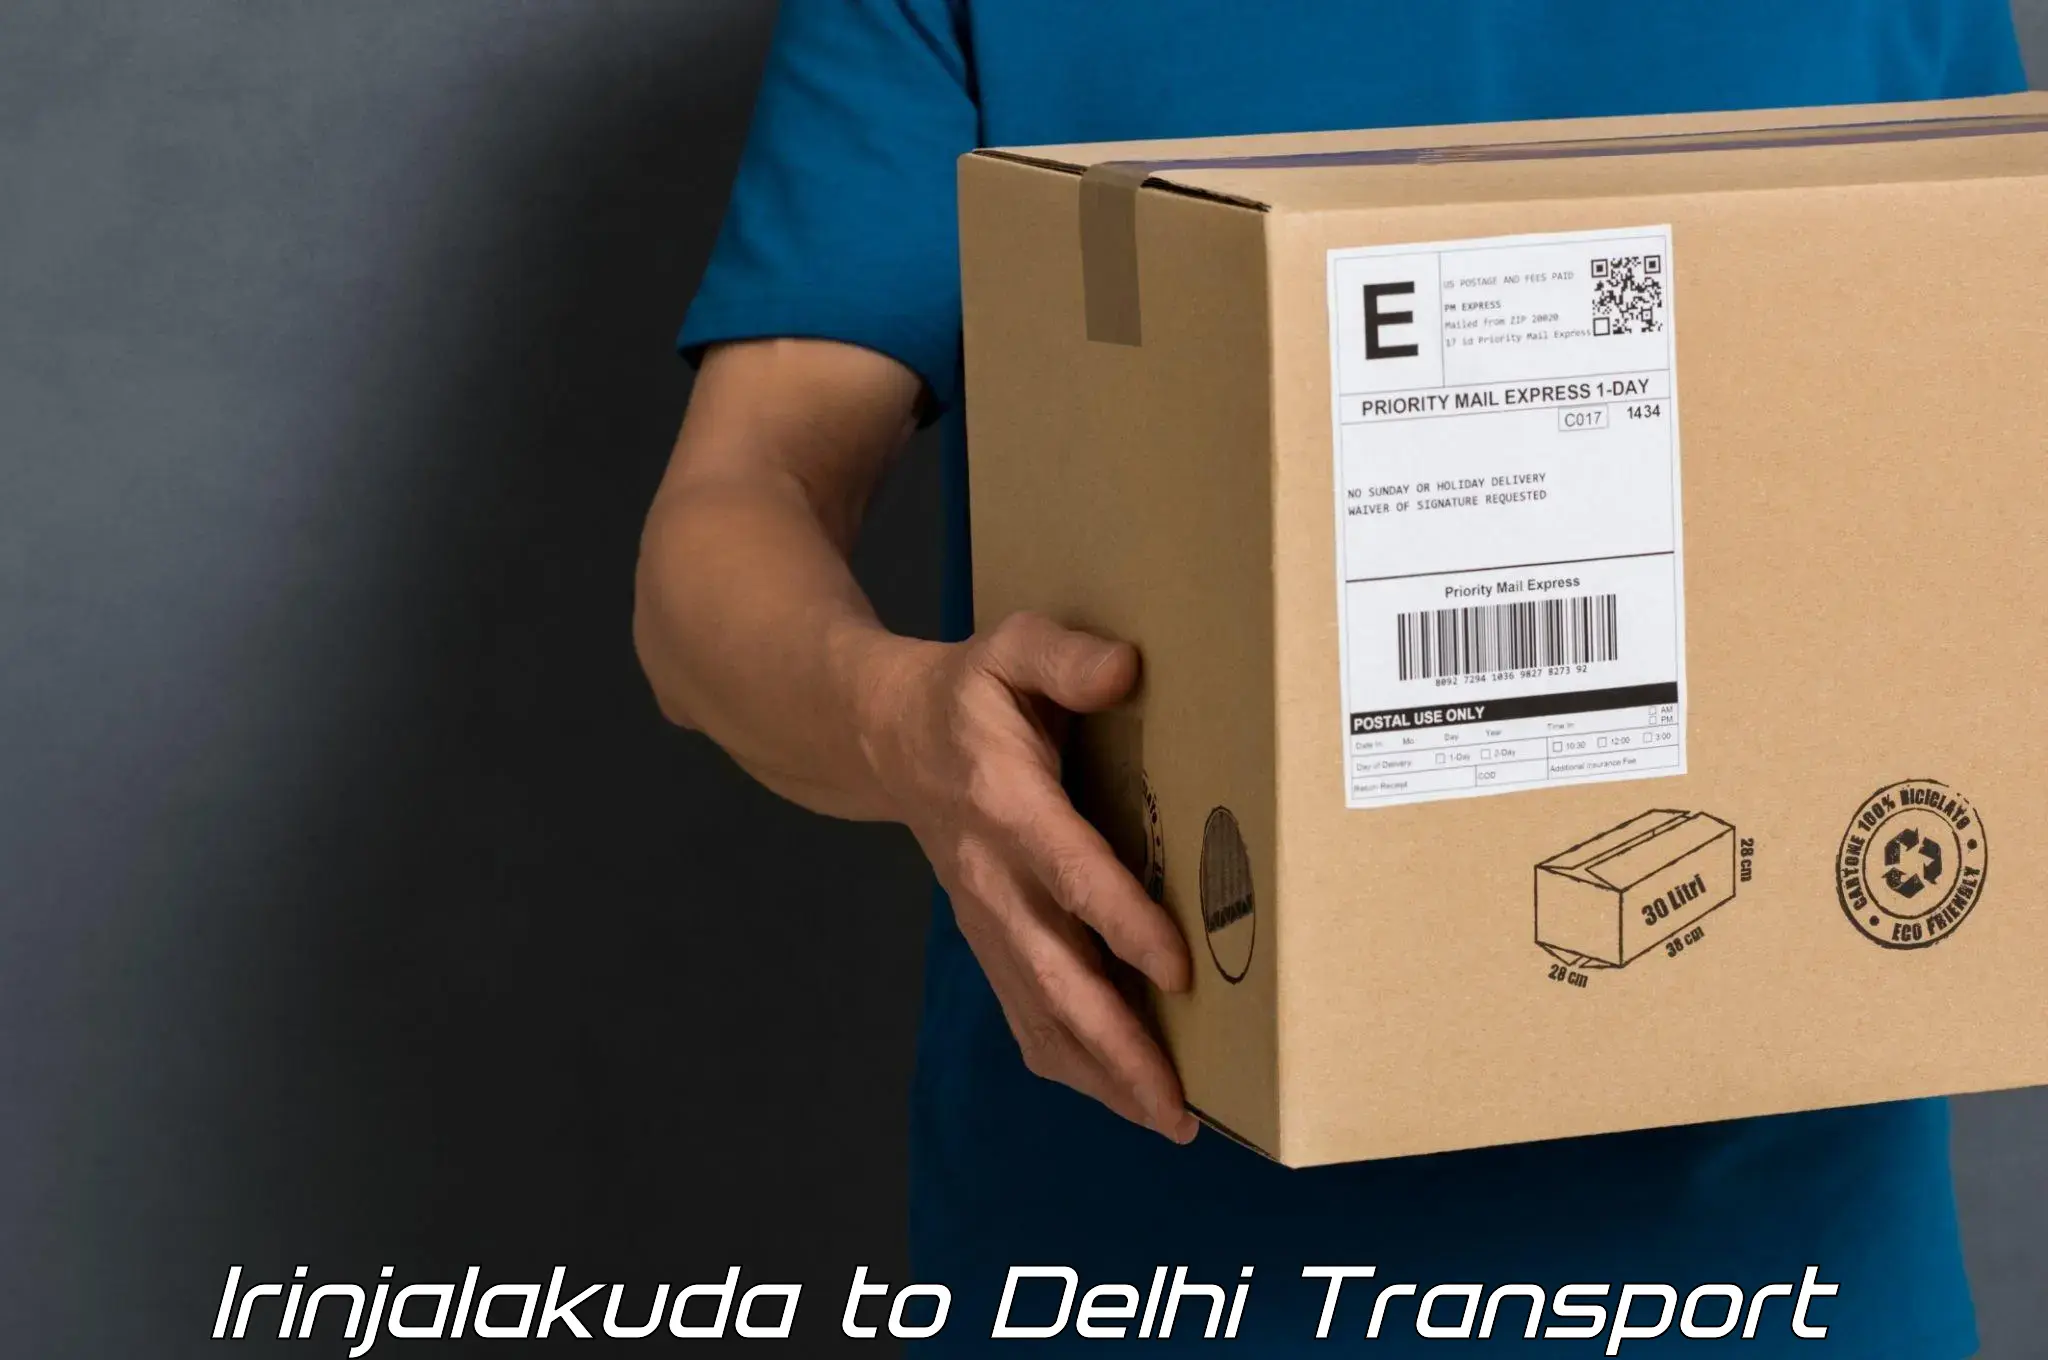 Online transport service Irinjalakuda to IIT Delhi